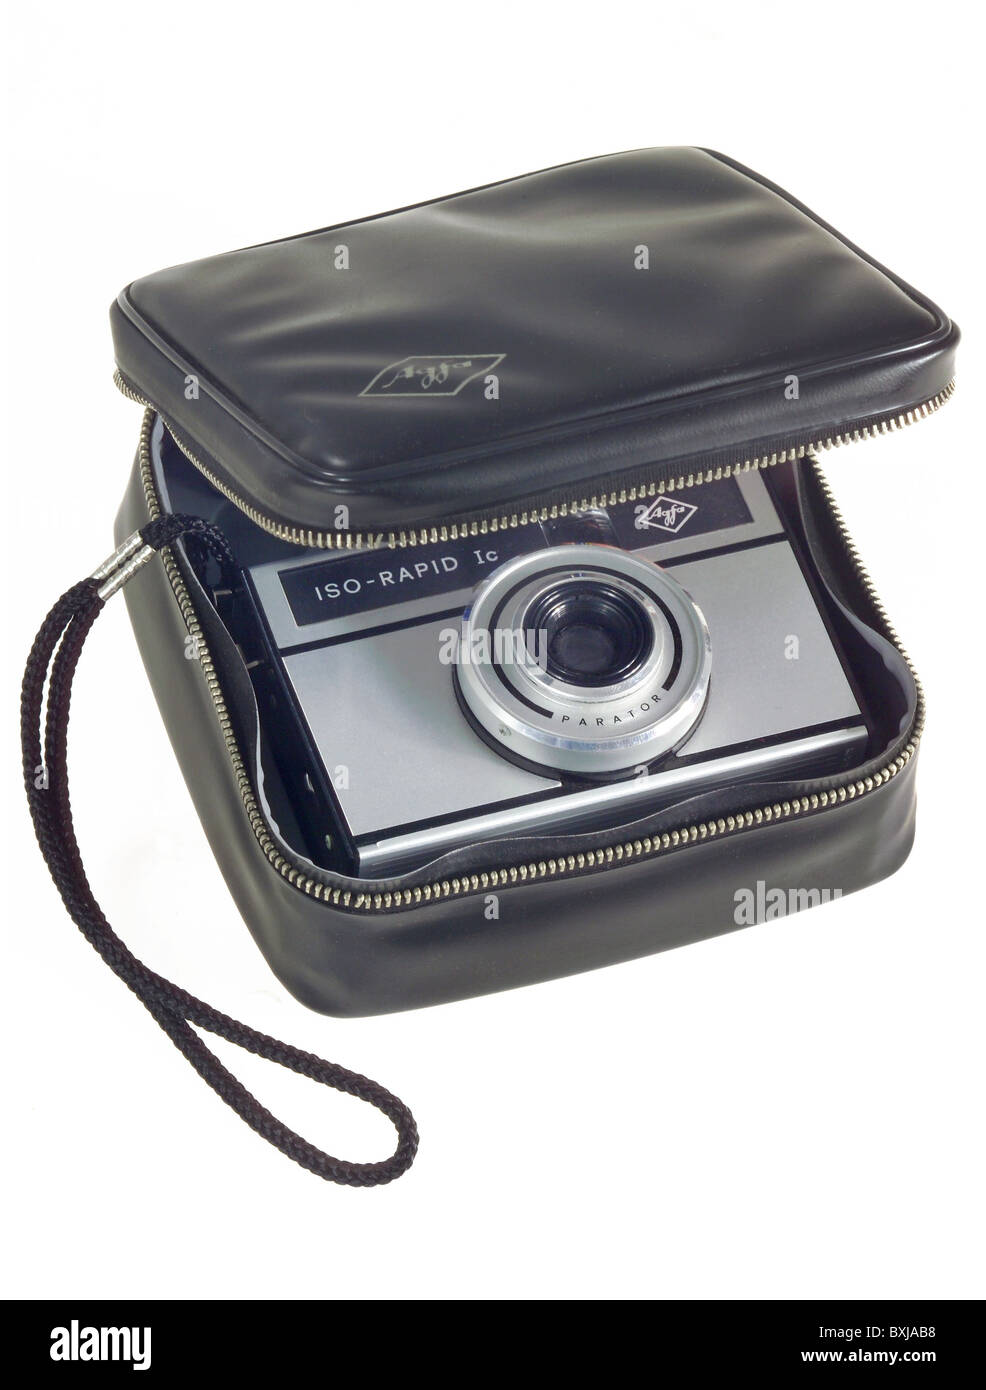 Fotografie, Kameras, 35mm-Film, Agfa ISO Rapid IC, Deutschland, 1965, zusätzliche-Rechte-Clearenzen-nicht verfügbar Stockfoto